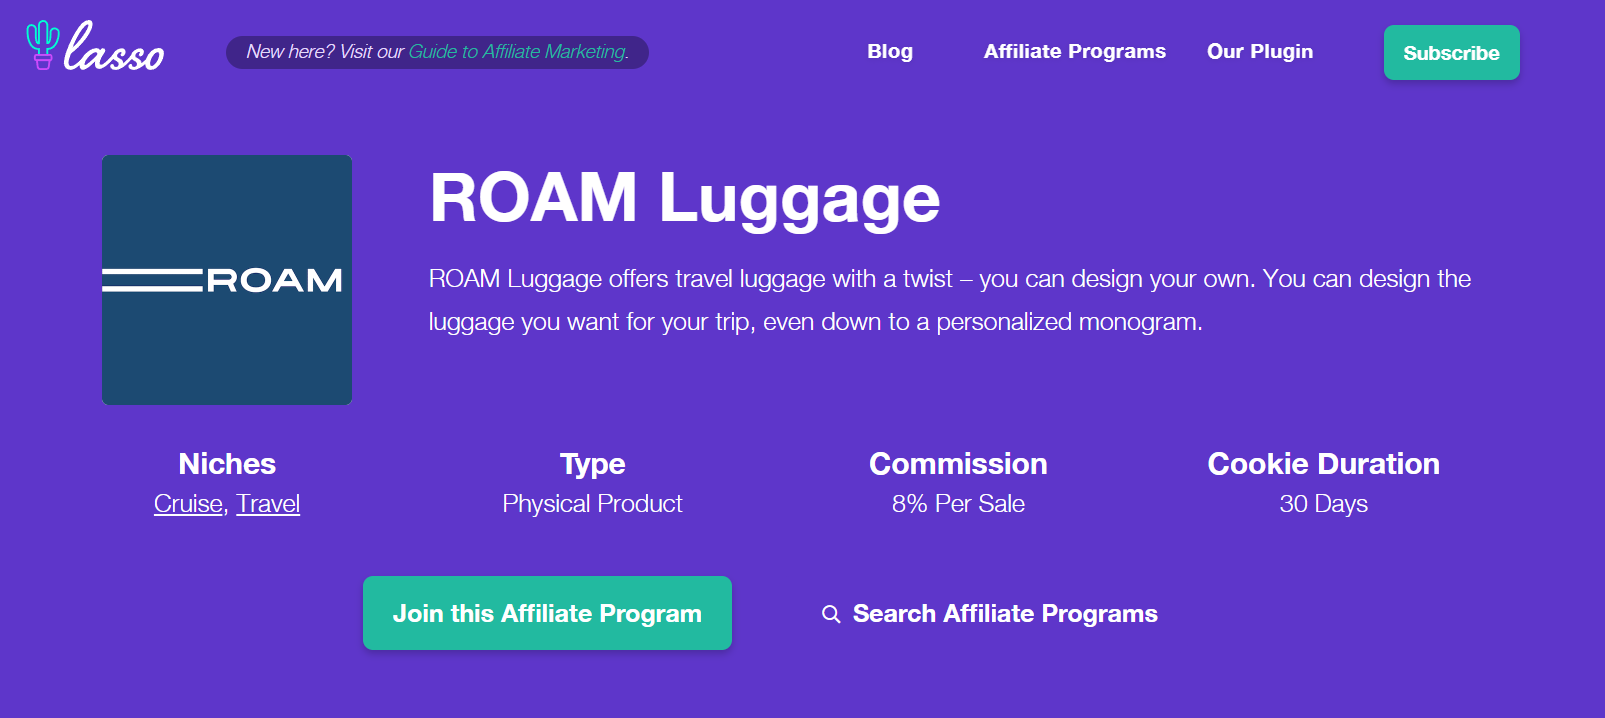 ROAM Luggage